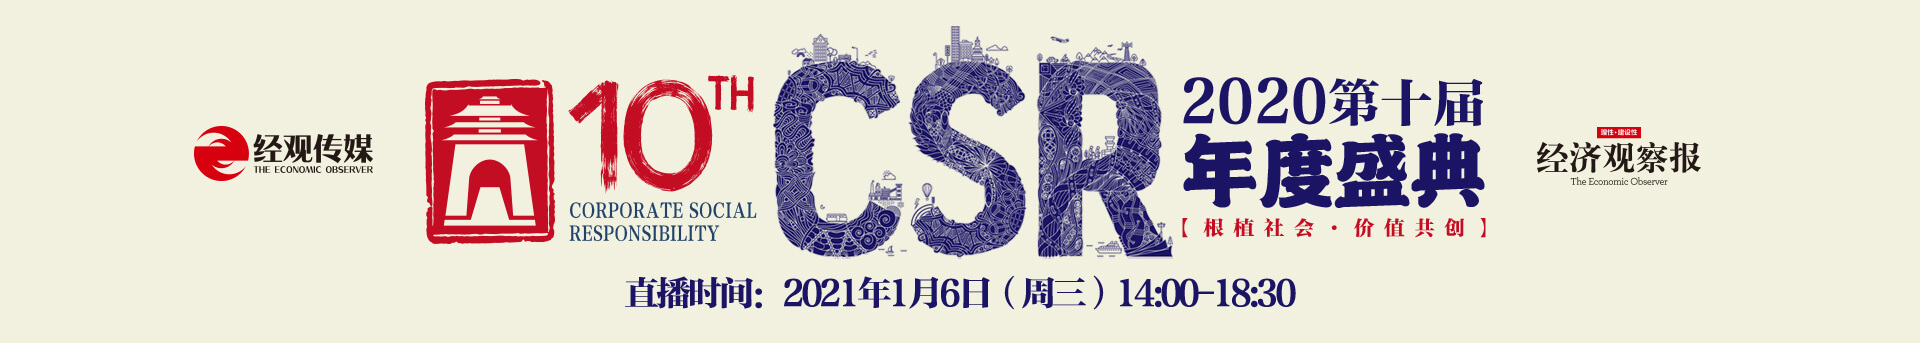 2020CSR第十届年度盛典